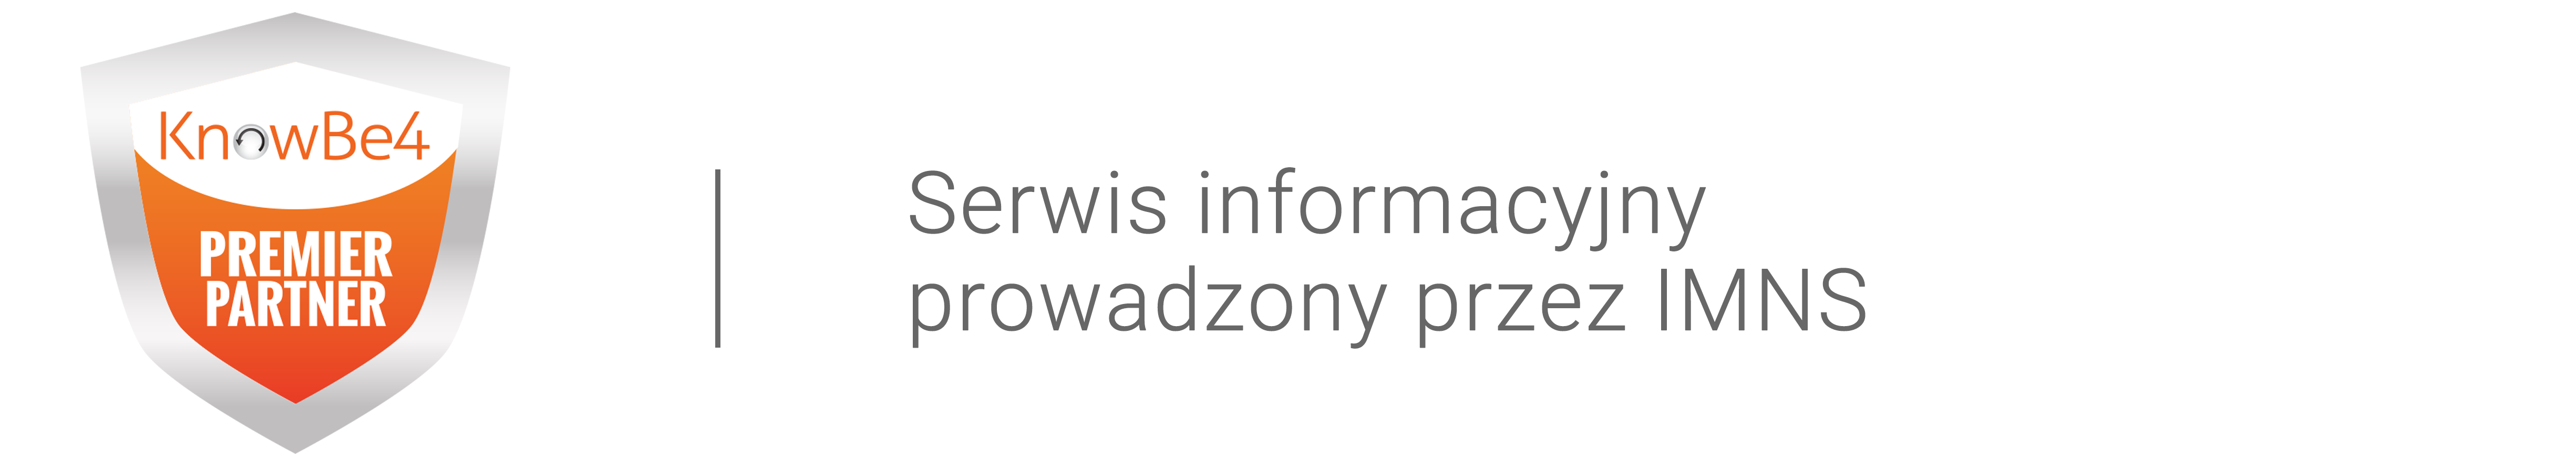 Serwis KnowBe4 po polsku